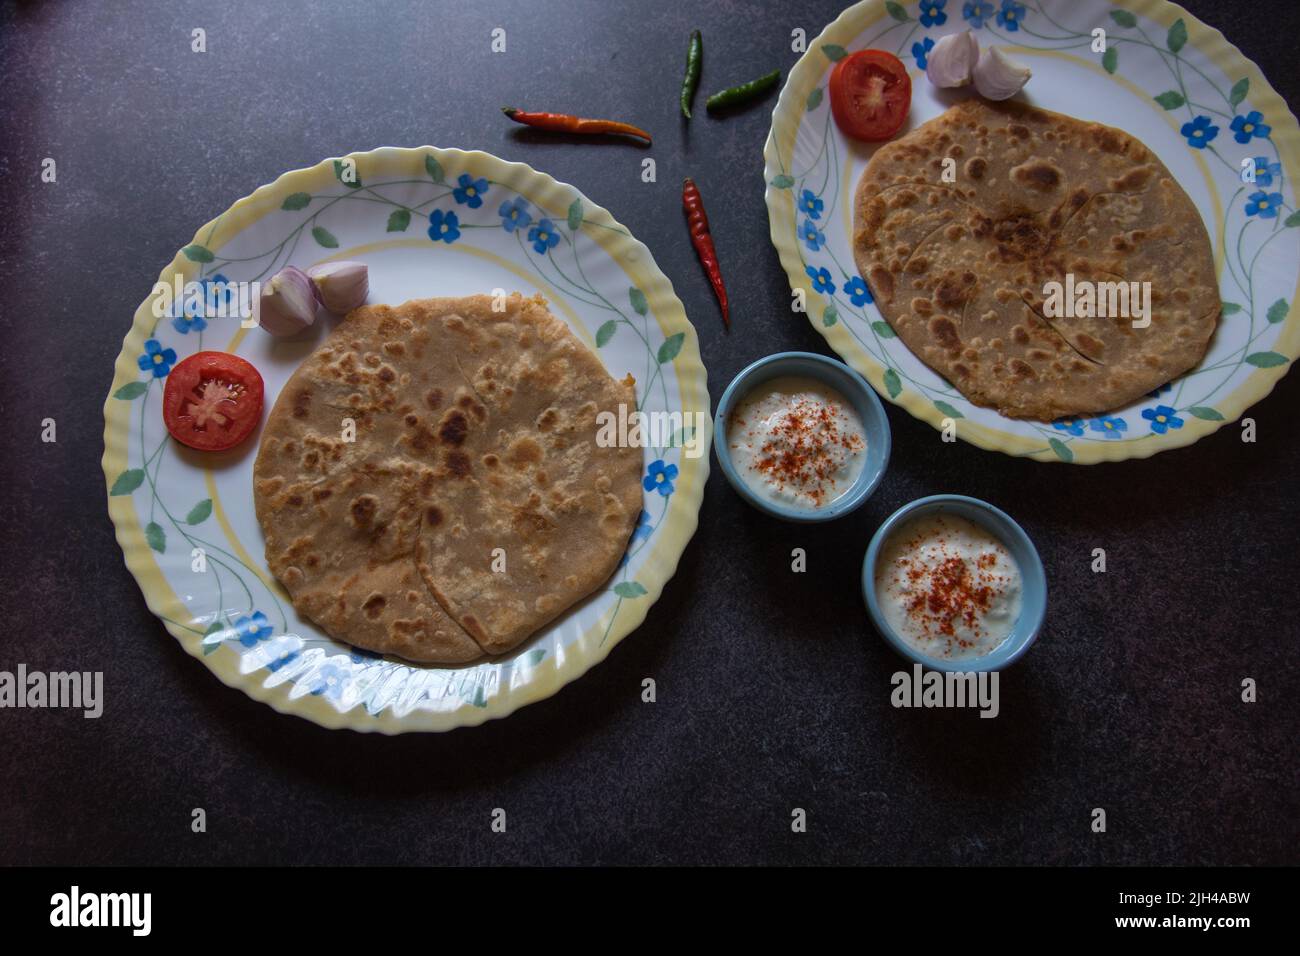 Es wird ein indisches Frühstück mit Aloo Paratha oder gefülltem Fladenbrot mit Kartoffeln serviert. Draufsicht Stockfoto